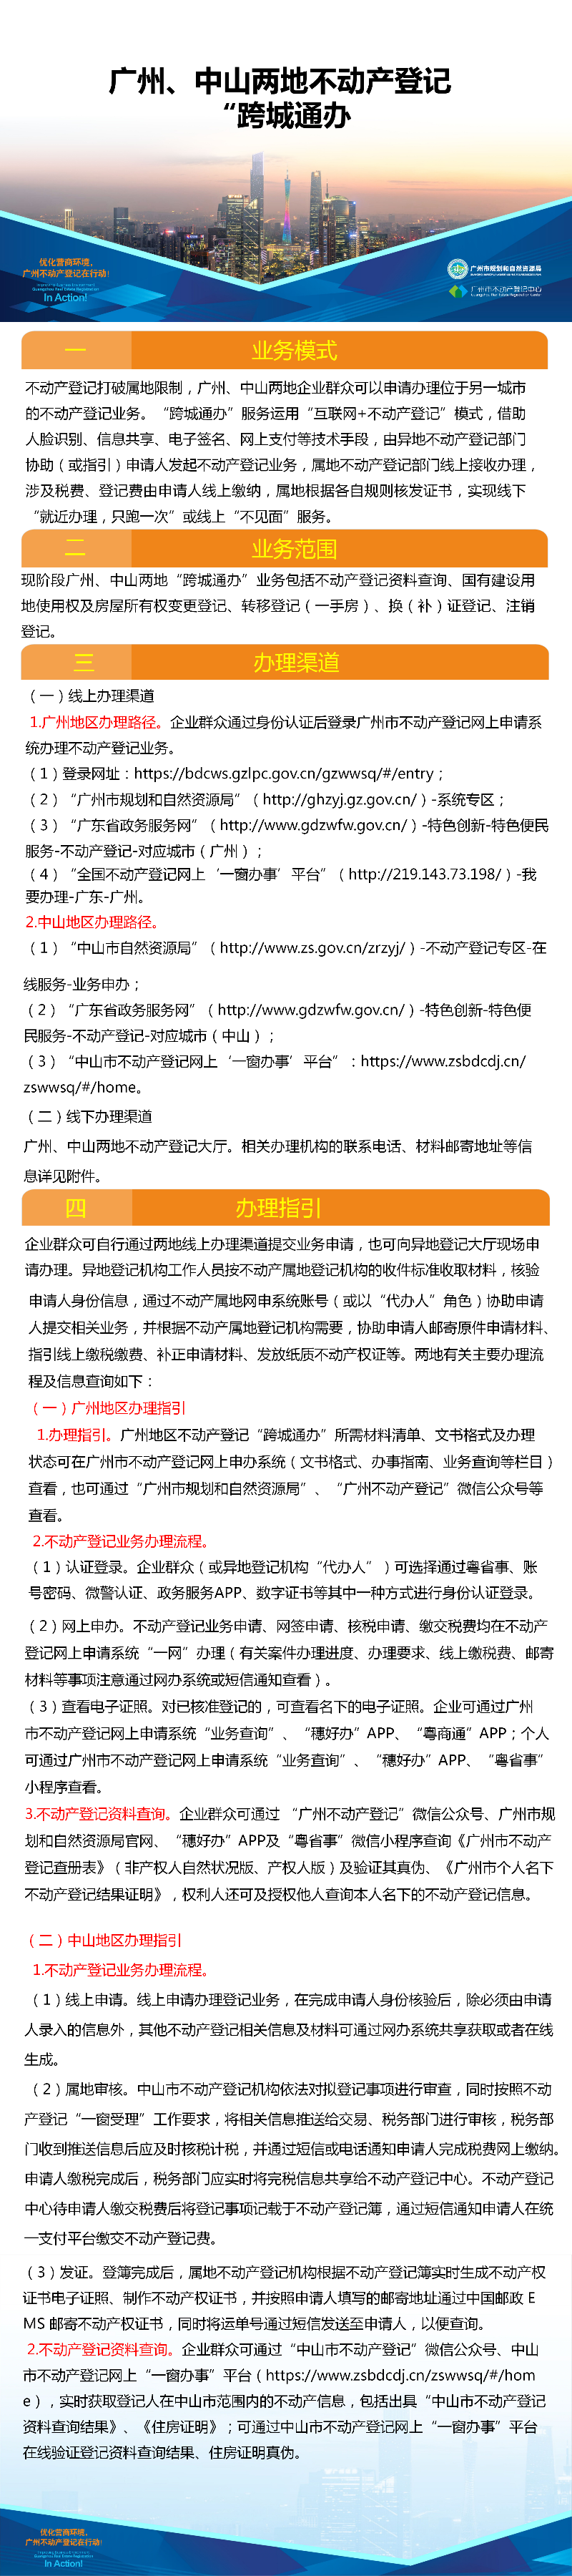 一图读懂-广州、中山两地不动产登记业务“跨城通办”4216.png